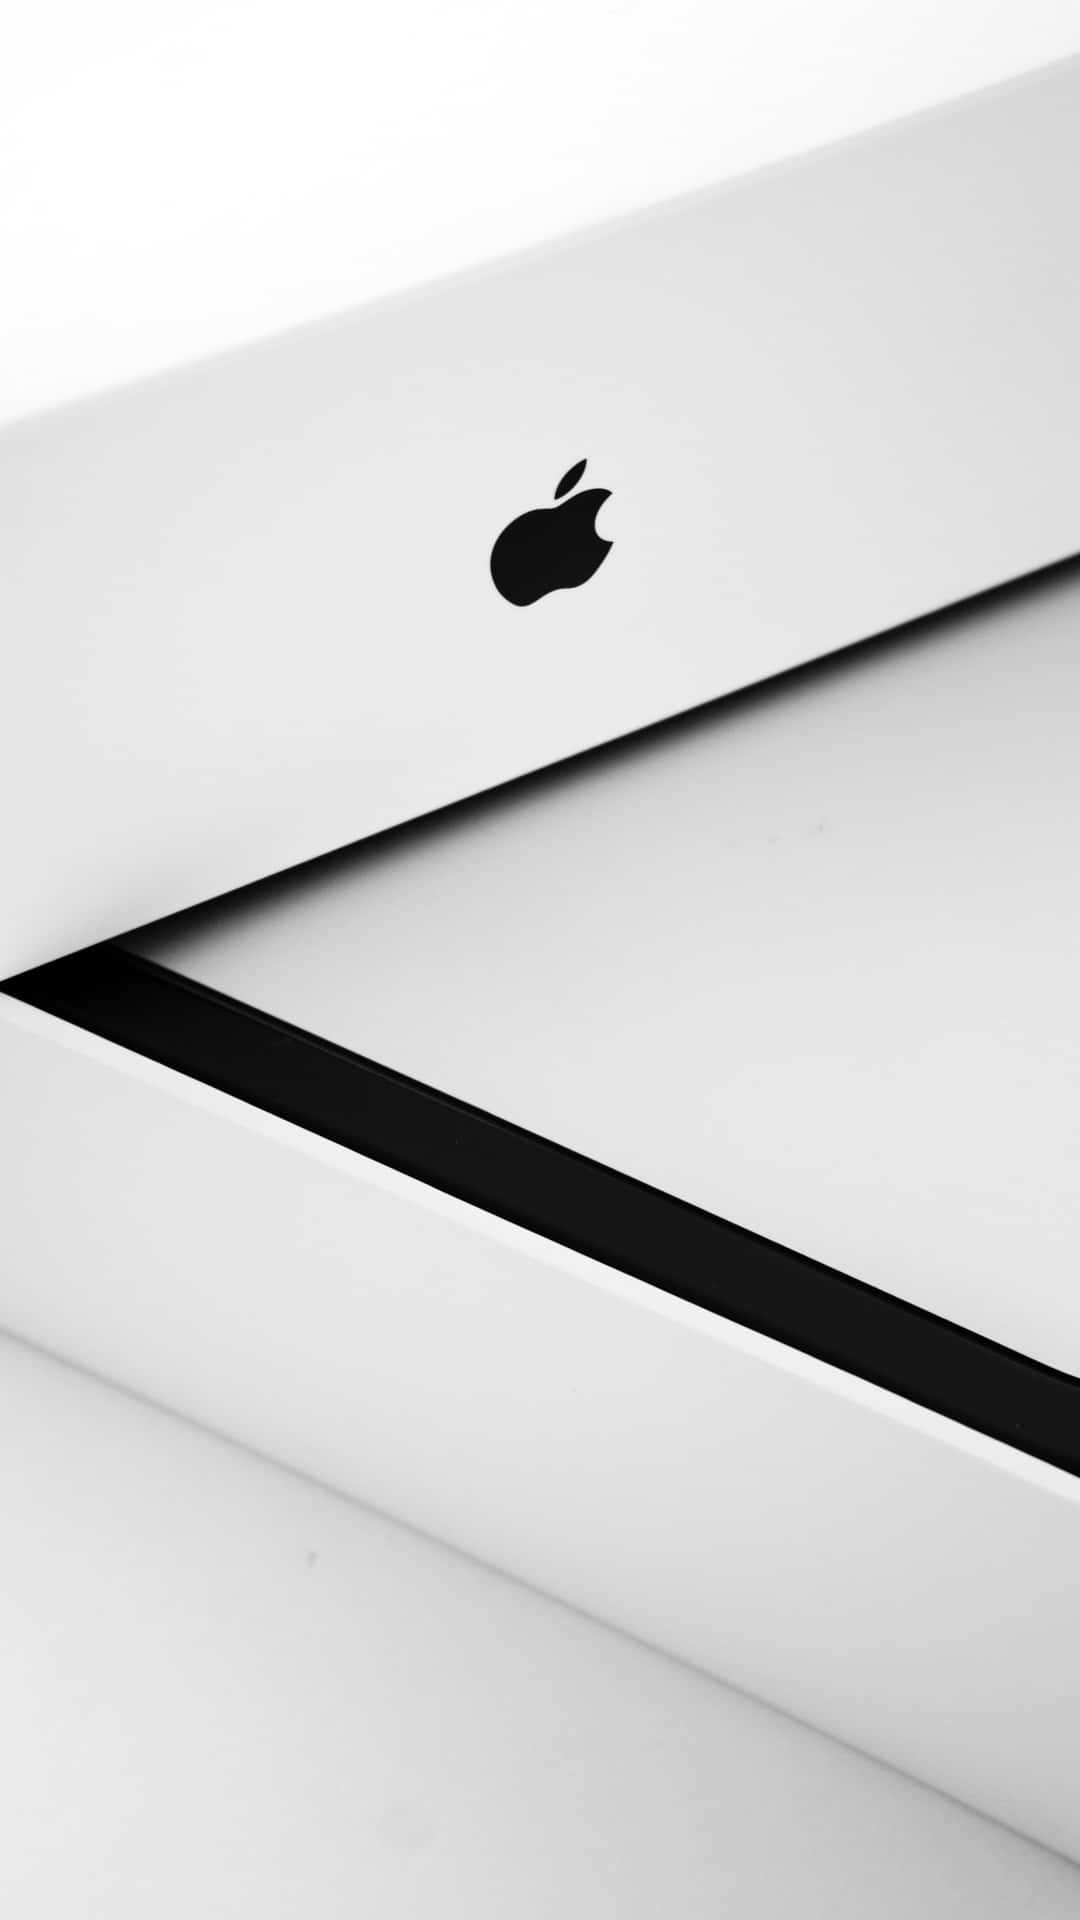 Dasapple-logo Auf Einem Iphone X Wallpaper